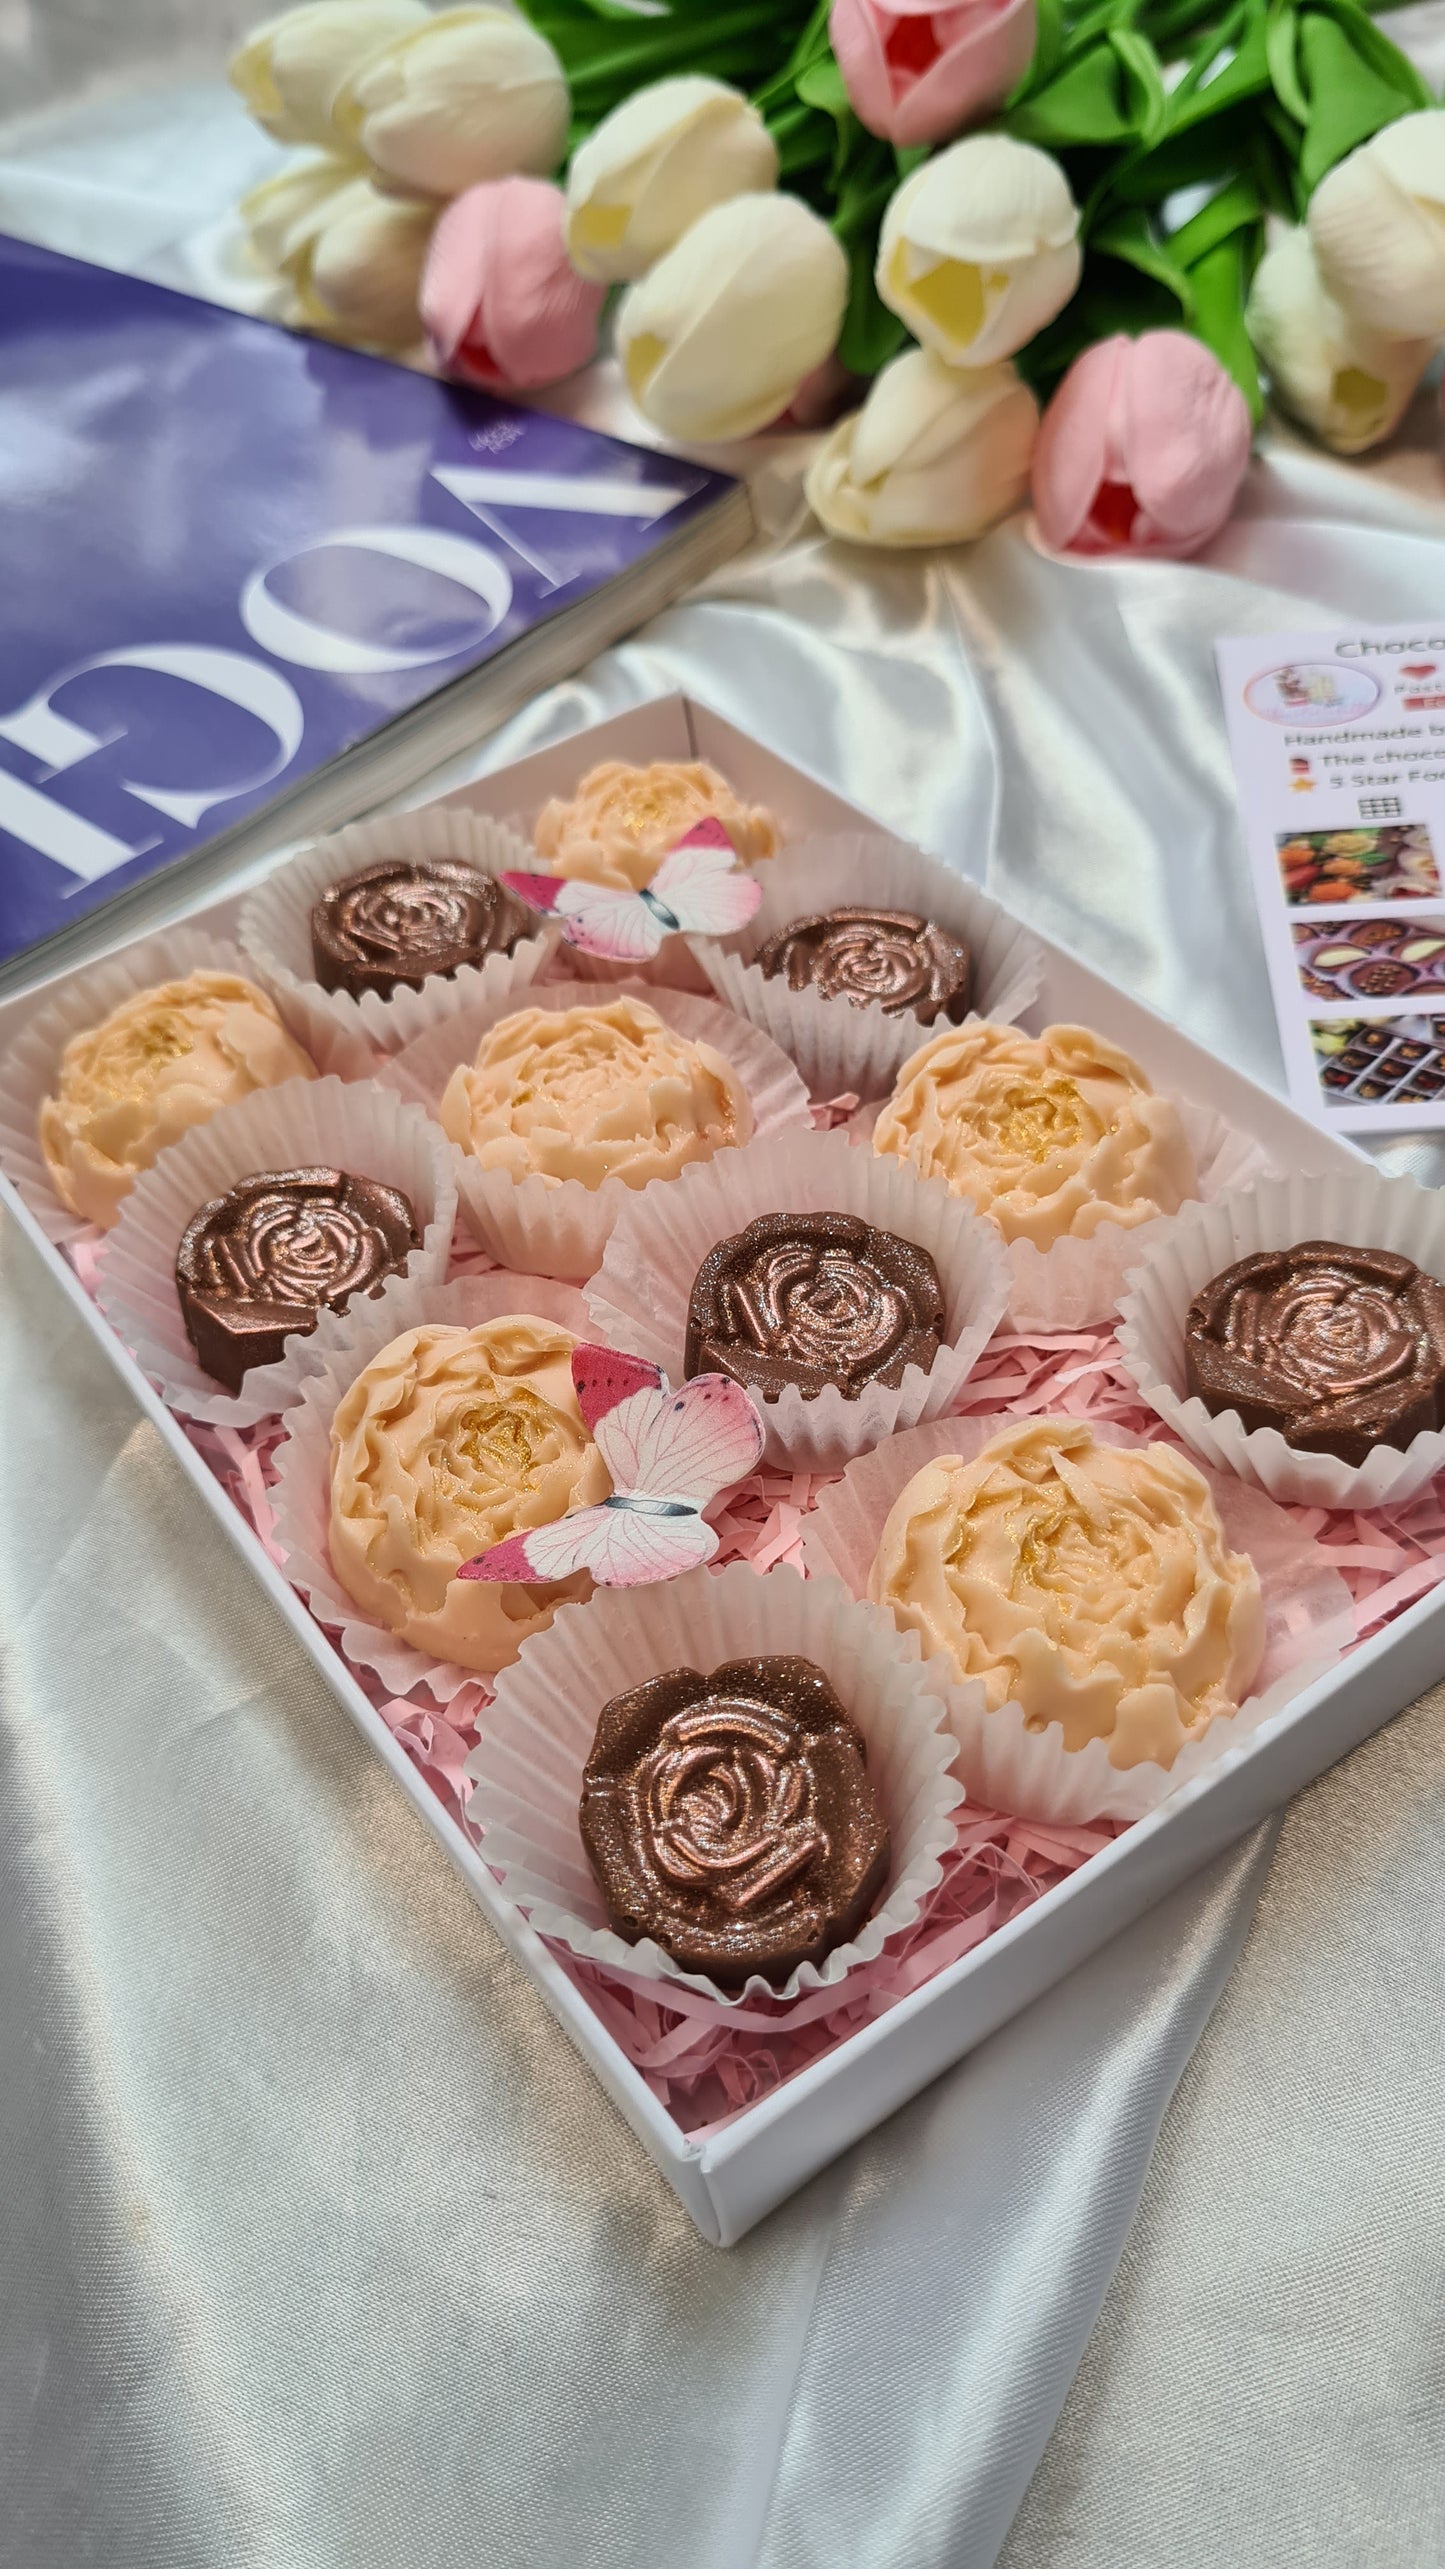 Chocolate flowers gift box